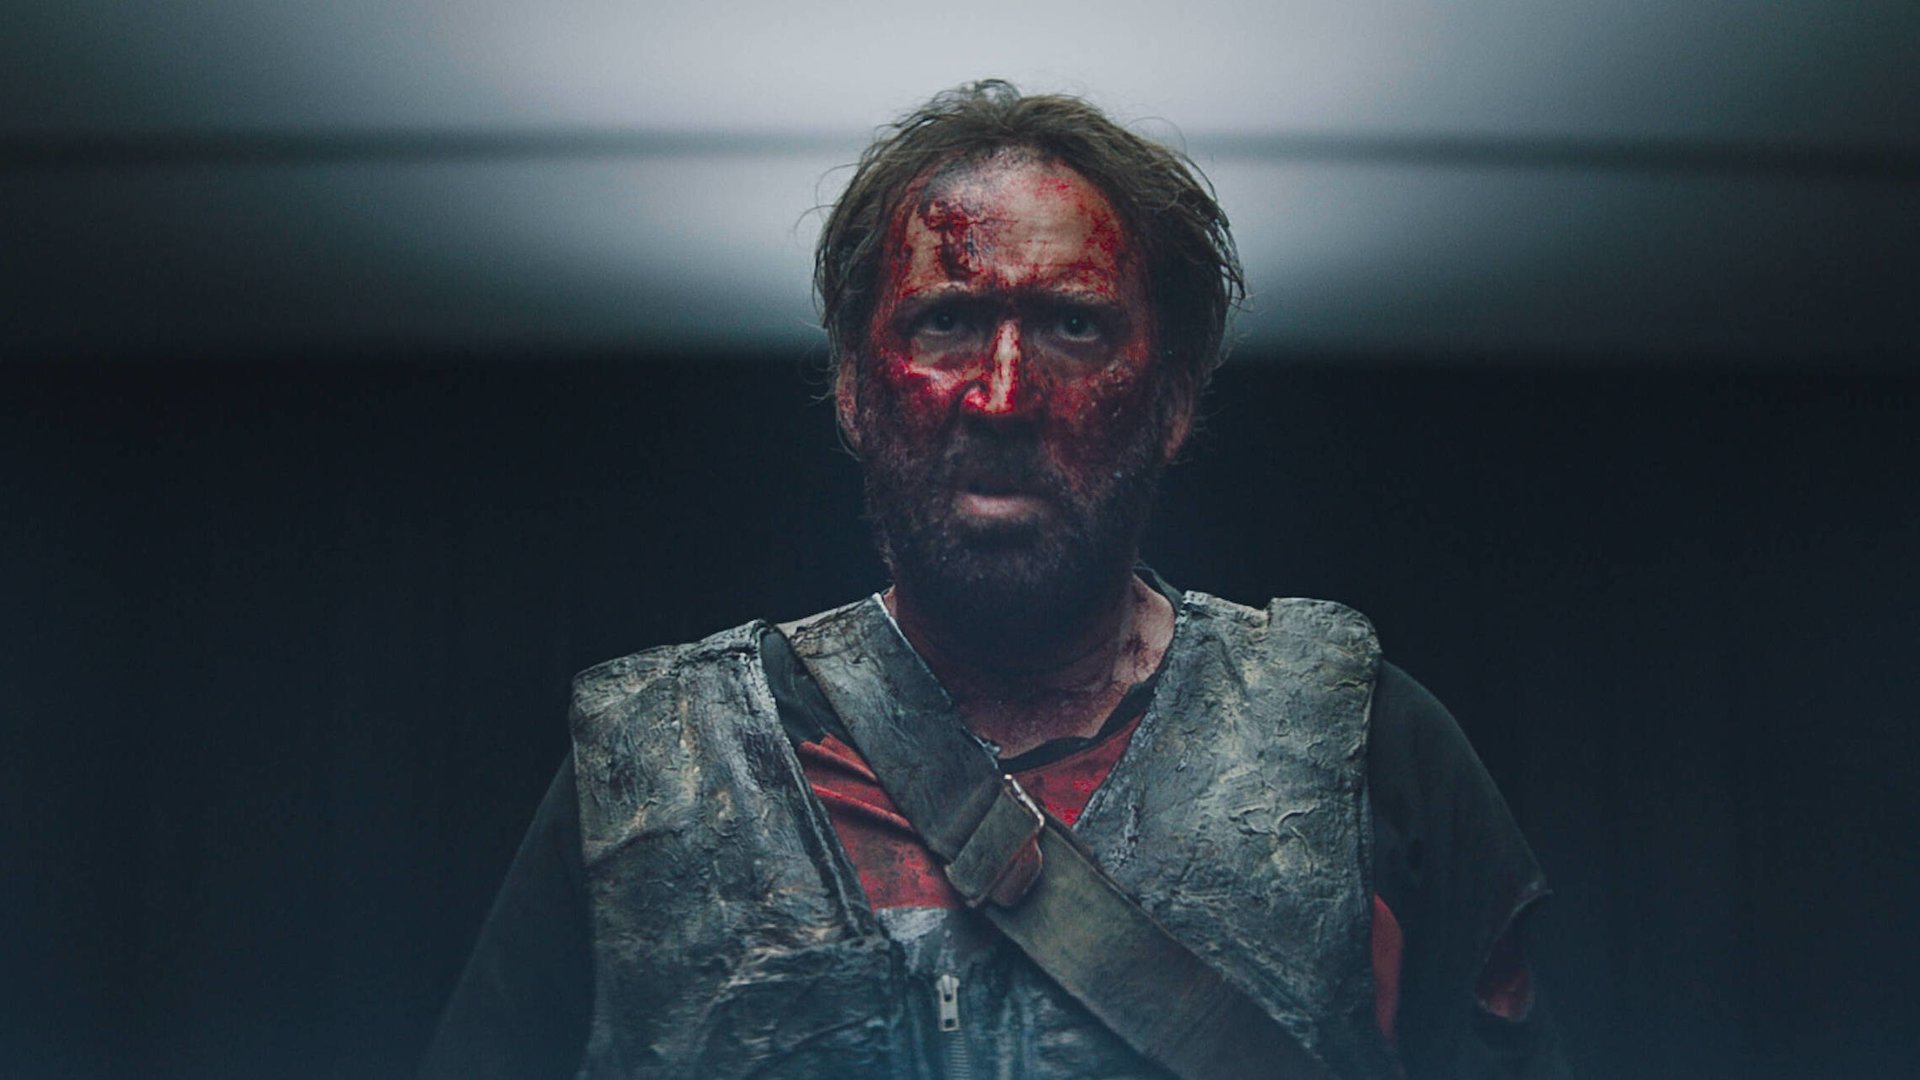 #Nicolas Cage kaum wiederzuerkennen: Seht die ersten Bilder von ihm als Dracula in „Renfield“